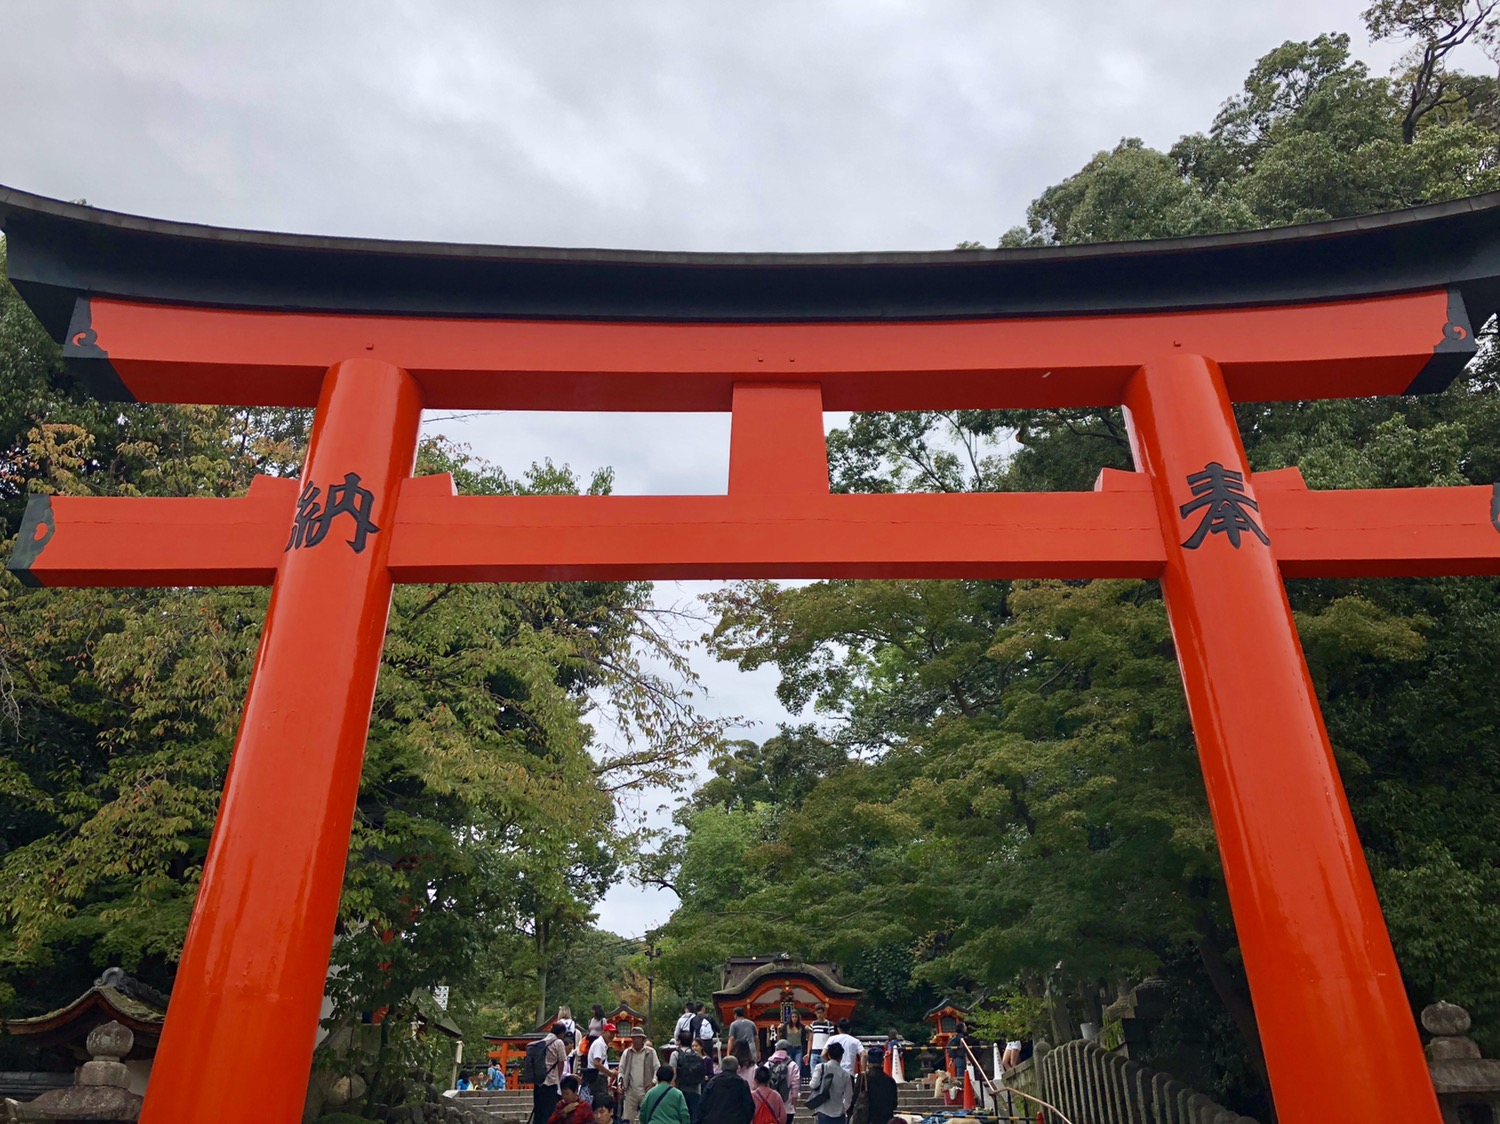 千本鳥居 京都 の旅行レビュー Trip Comトラベルガイド